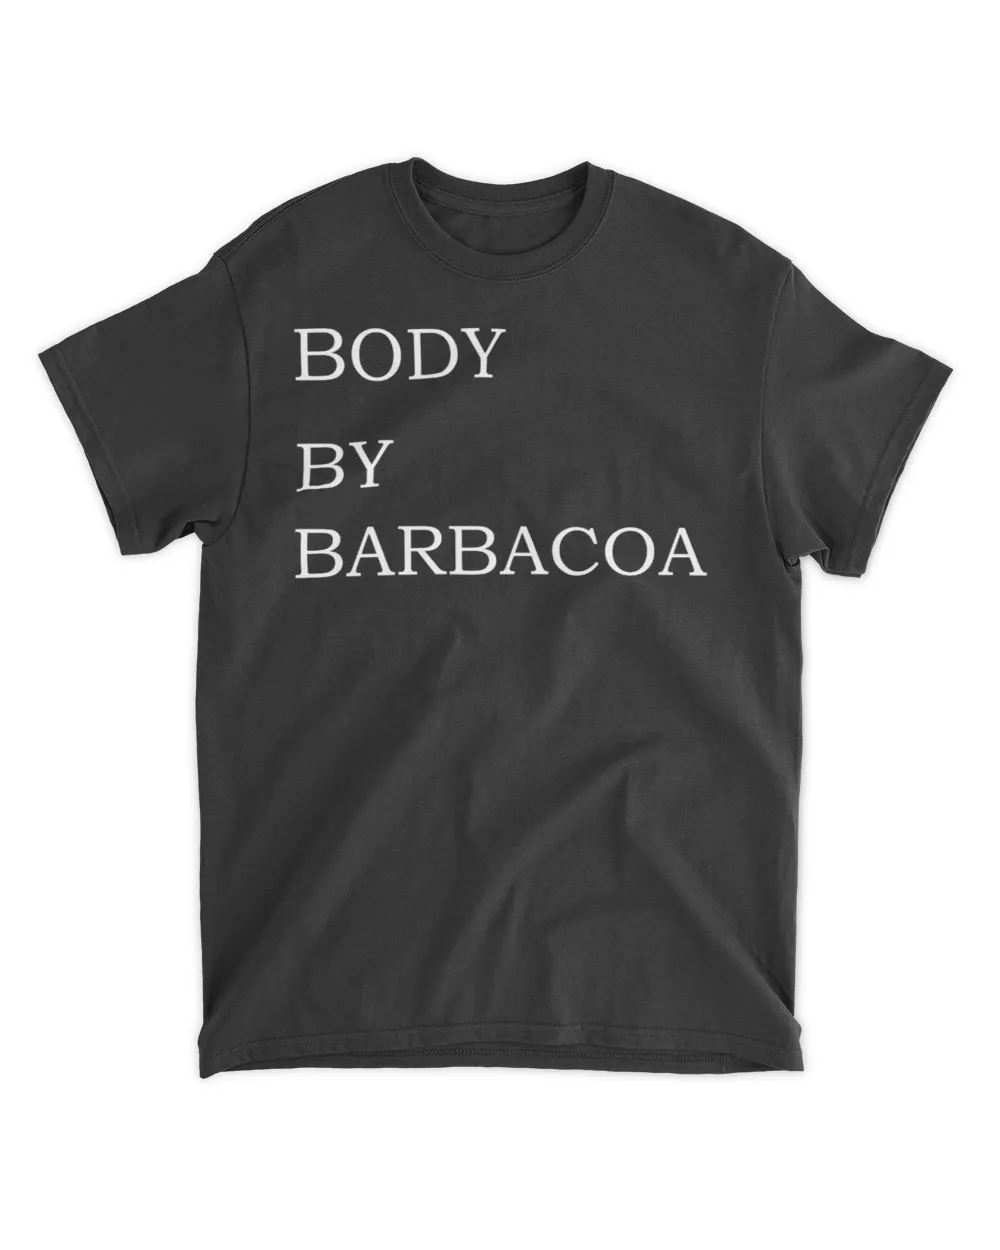  Body by barbacoa shirt